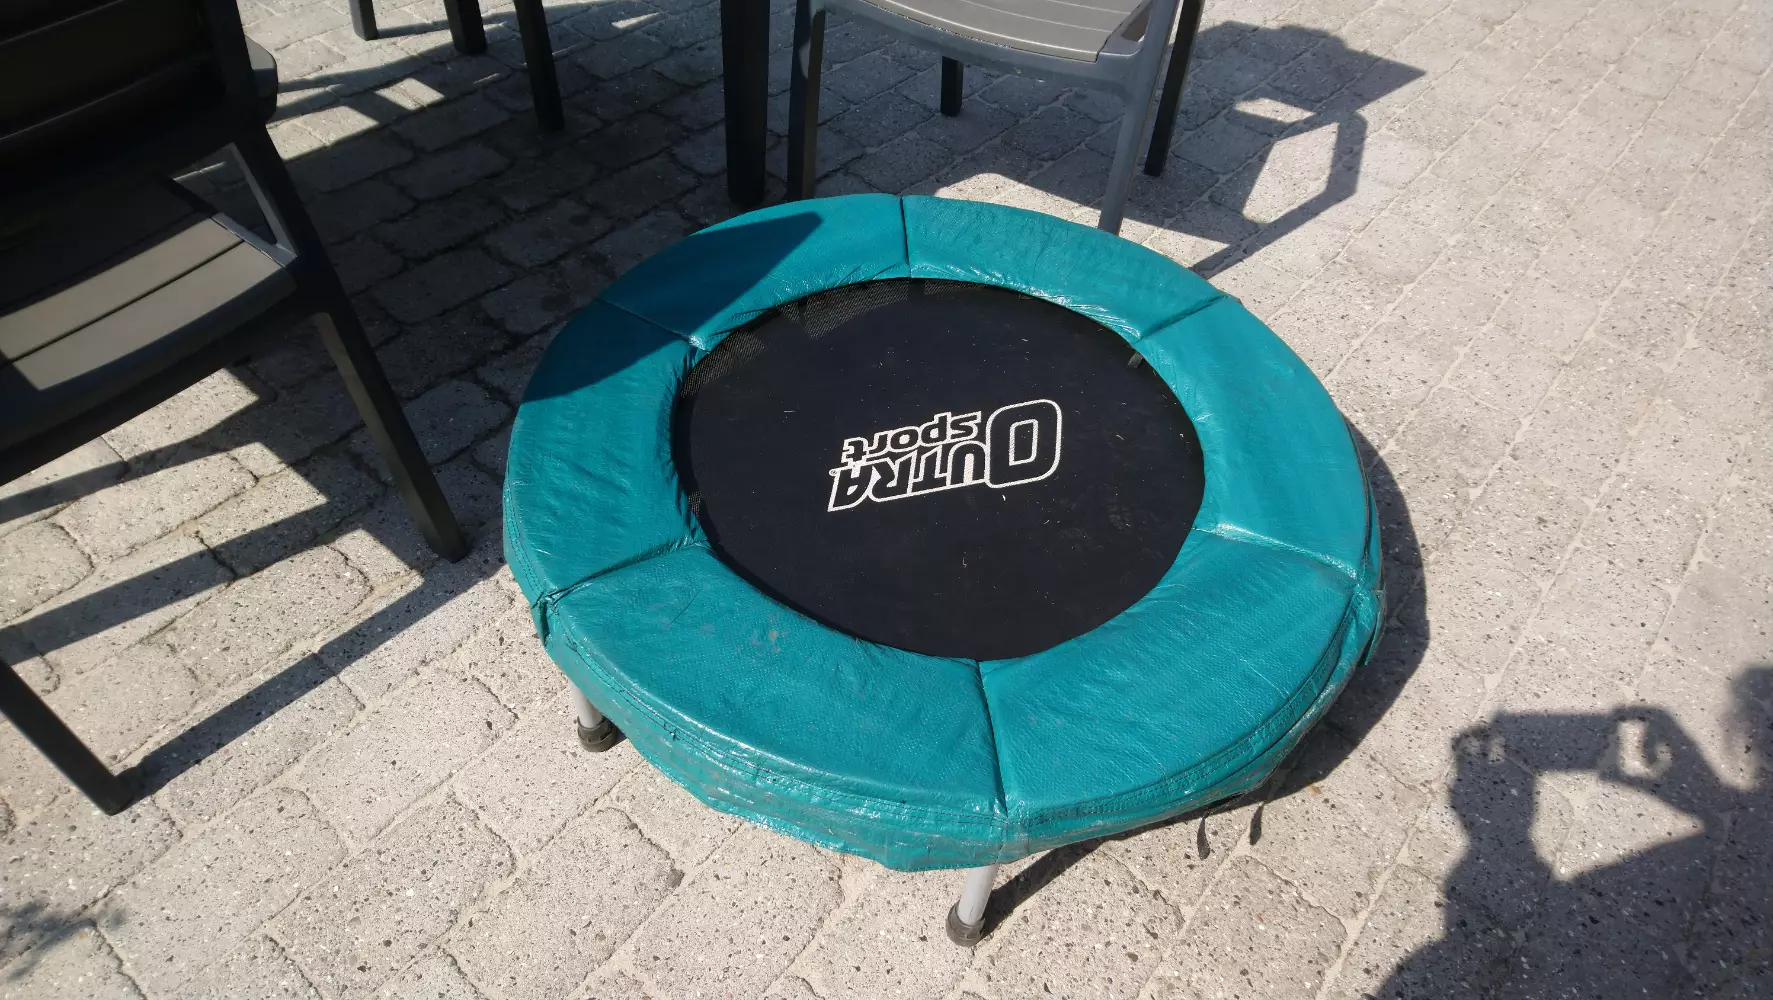 Køb OUTRA SPORT trampolin af Sofie på Reshopper · Shop secondhand til børn, mor og bolig